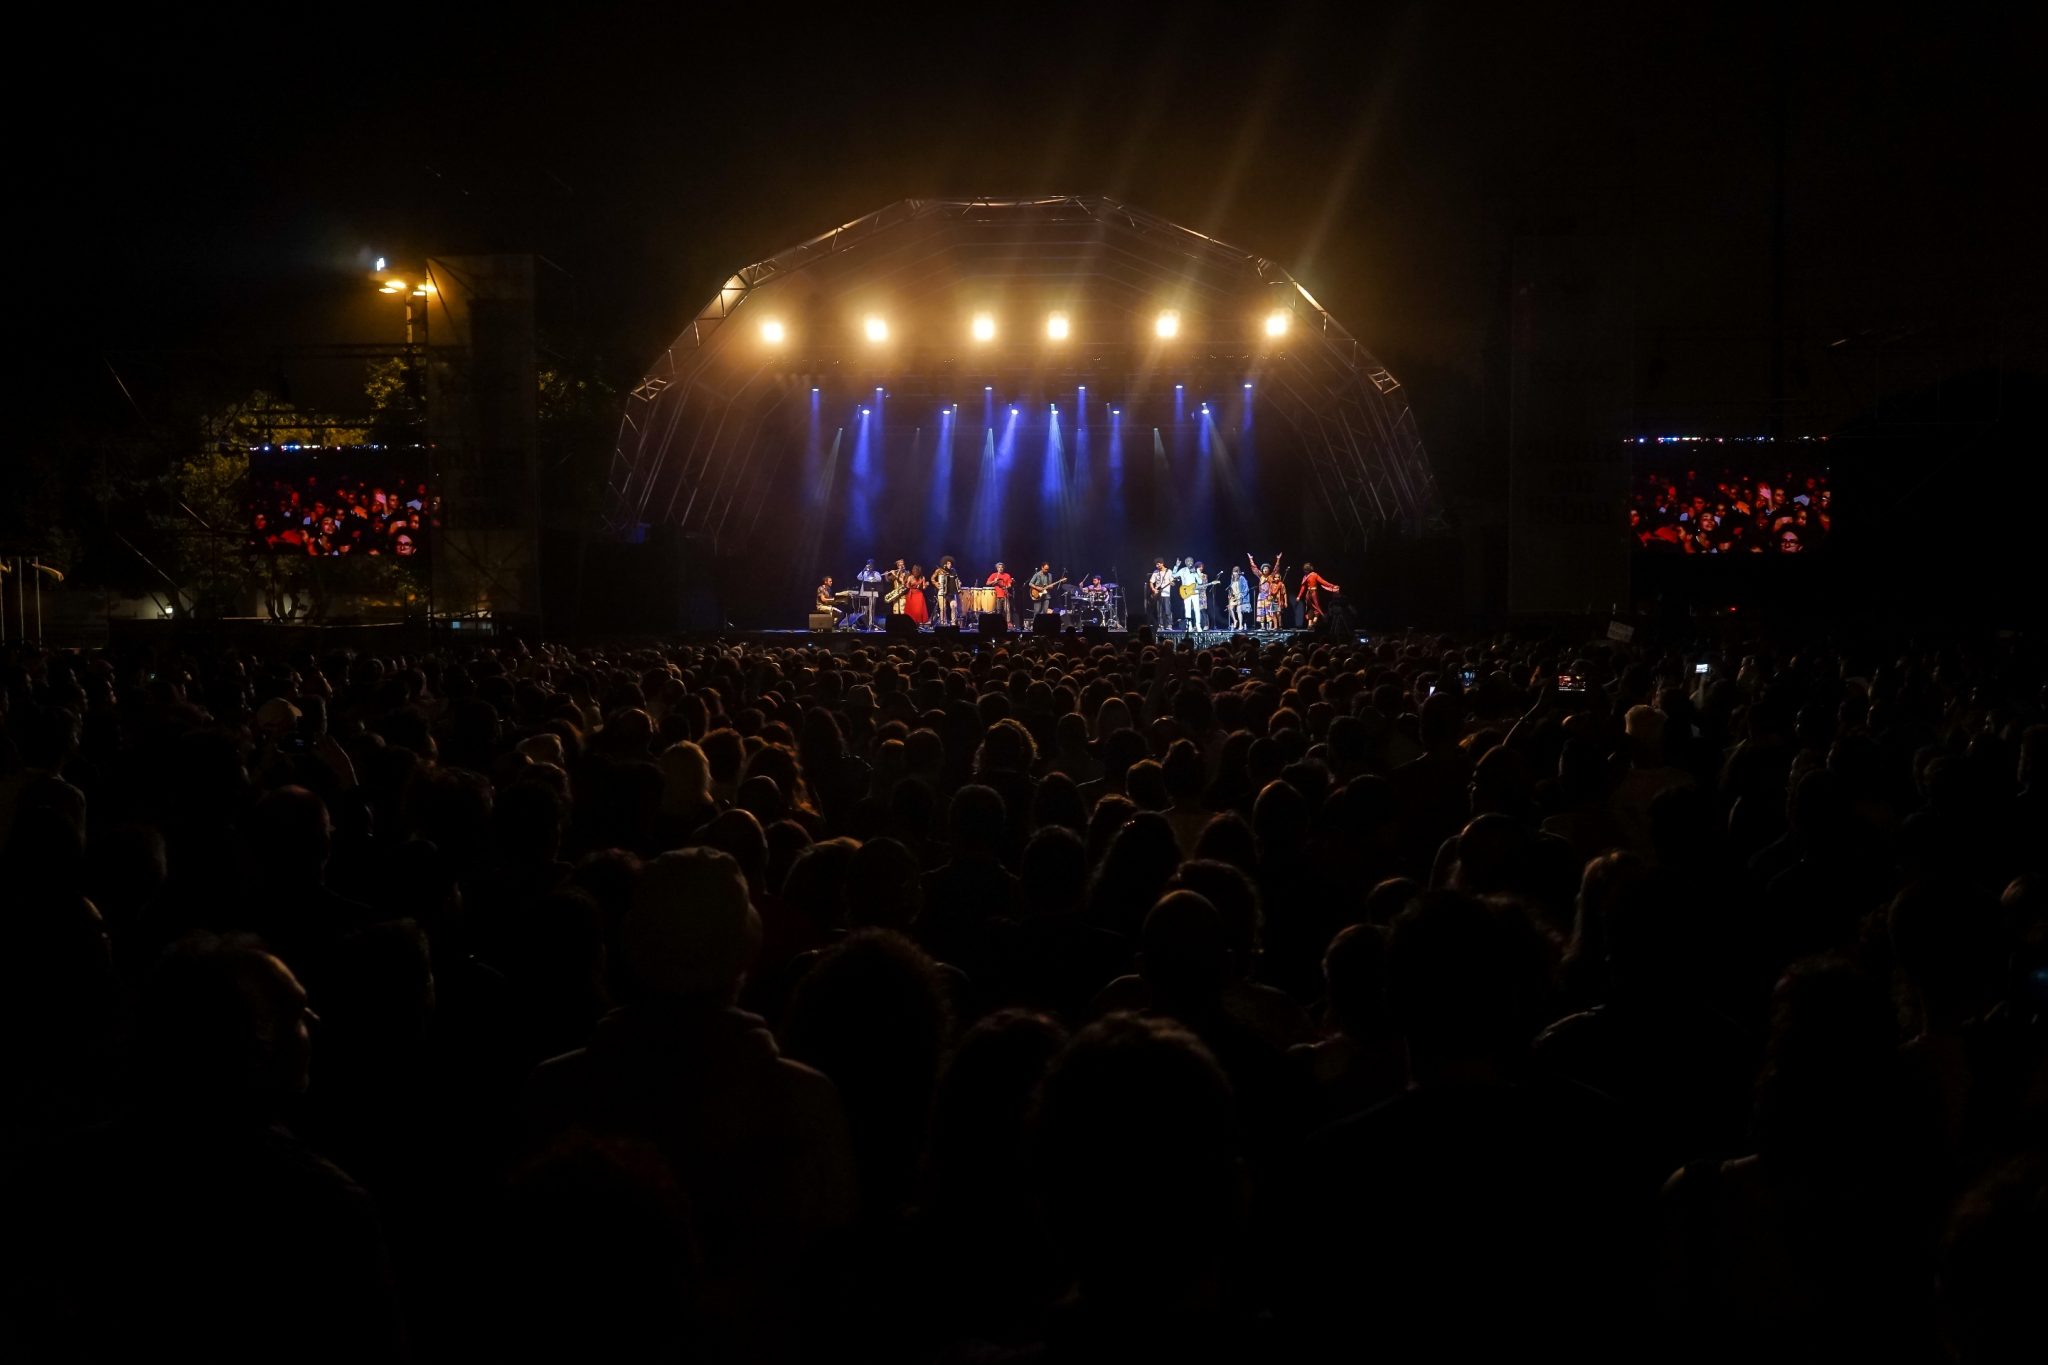 Vista geral do público que assistiu ao concerto Refavela 40, com o palco ao fundo repleto de músicos